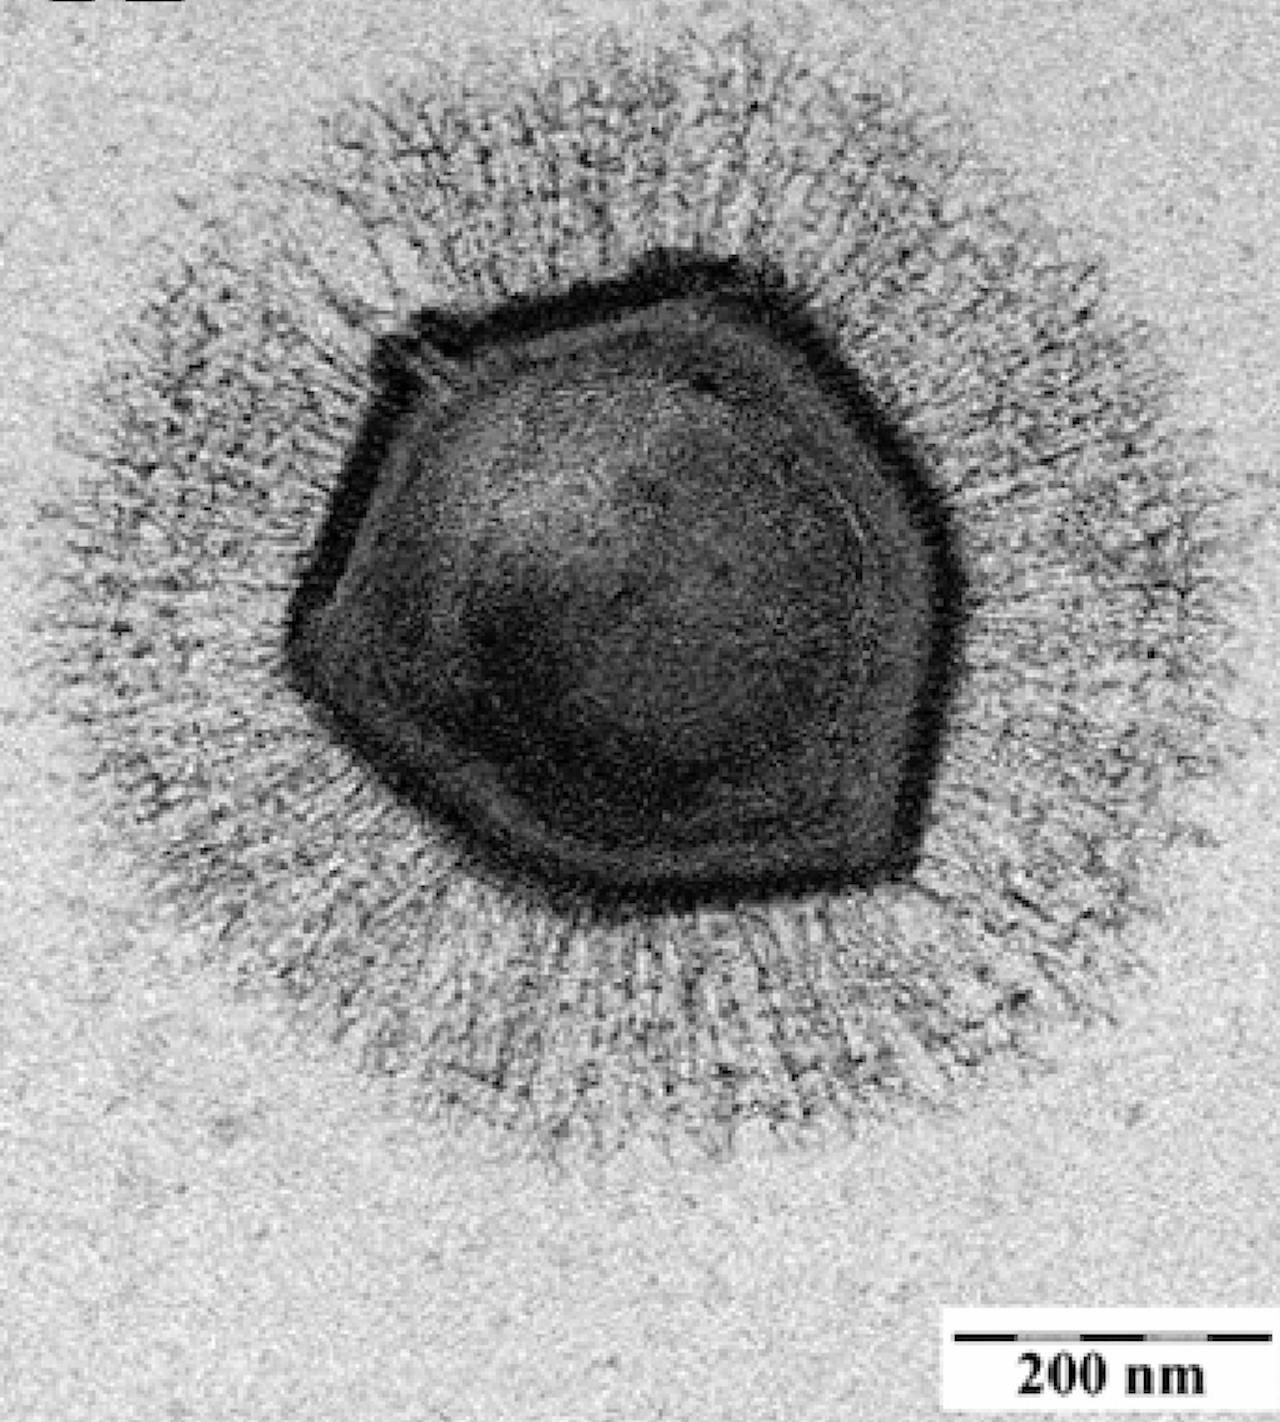 Zwart-wit beeld van een Mimivirus.